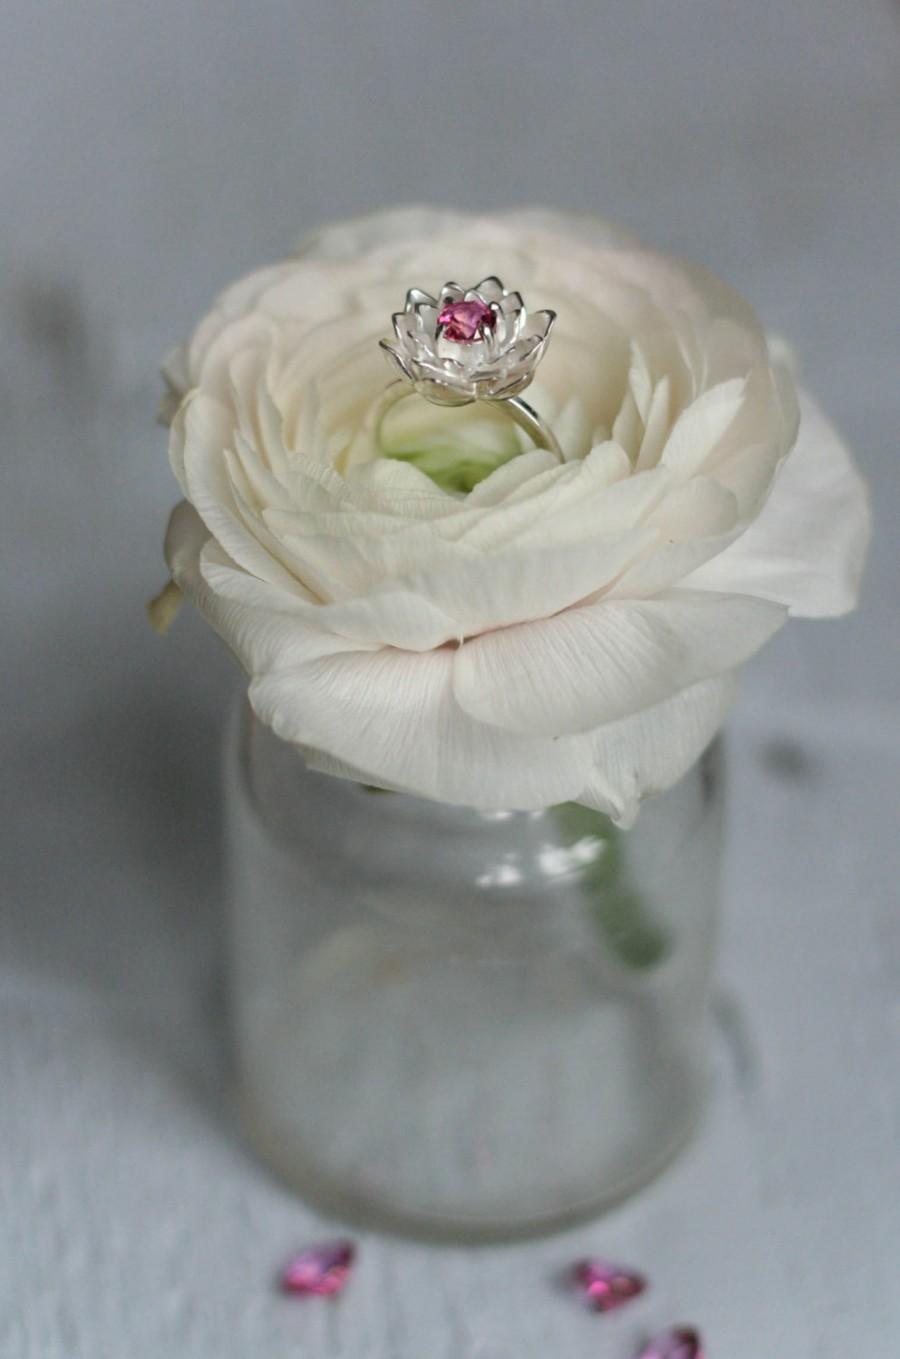 Wedding - Flower engagement ring, pink topaz ring, proposal ring, pink gemstone ring, lotus ring, sterling silver ring, promise ring, lotus jewelry